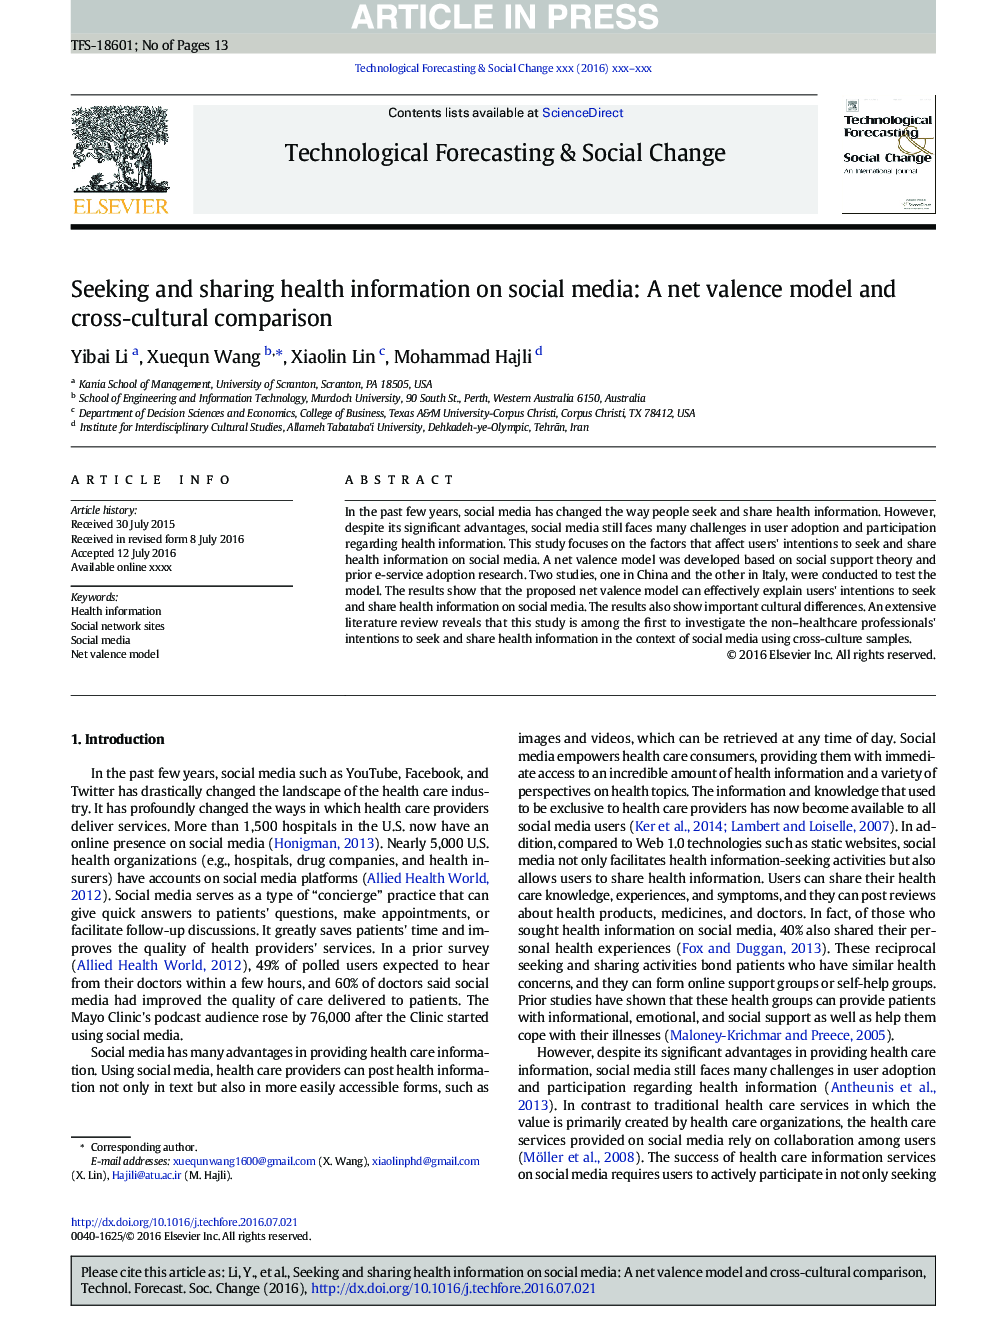 جستجو و به اشتراک گذاری اطلاعات بهداشتی در رسانه های اجتماعی: مدل ارزش والنتاین و مقایسه بین فرهنگی 